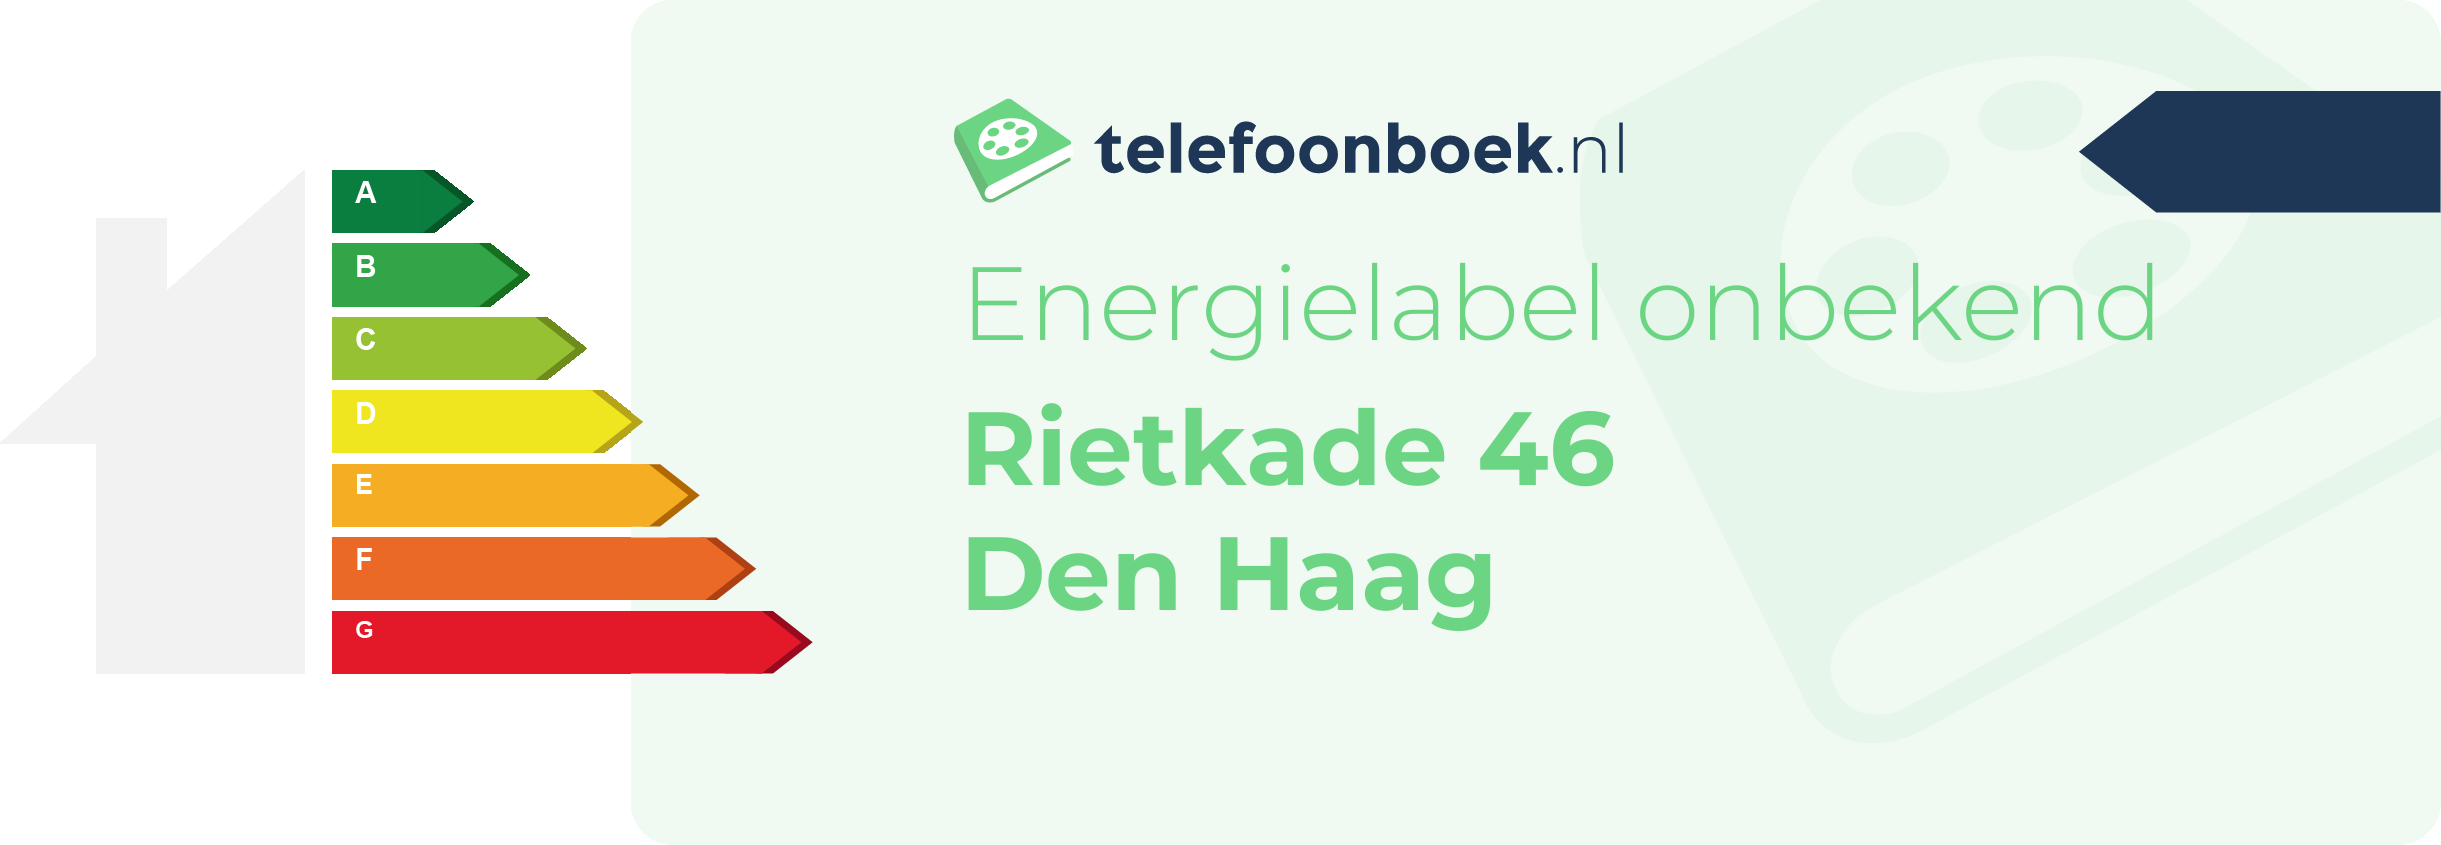 Energielabel Rietkade 46 Den Haag